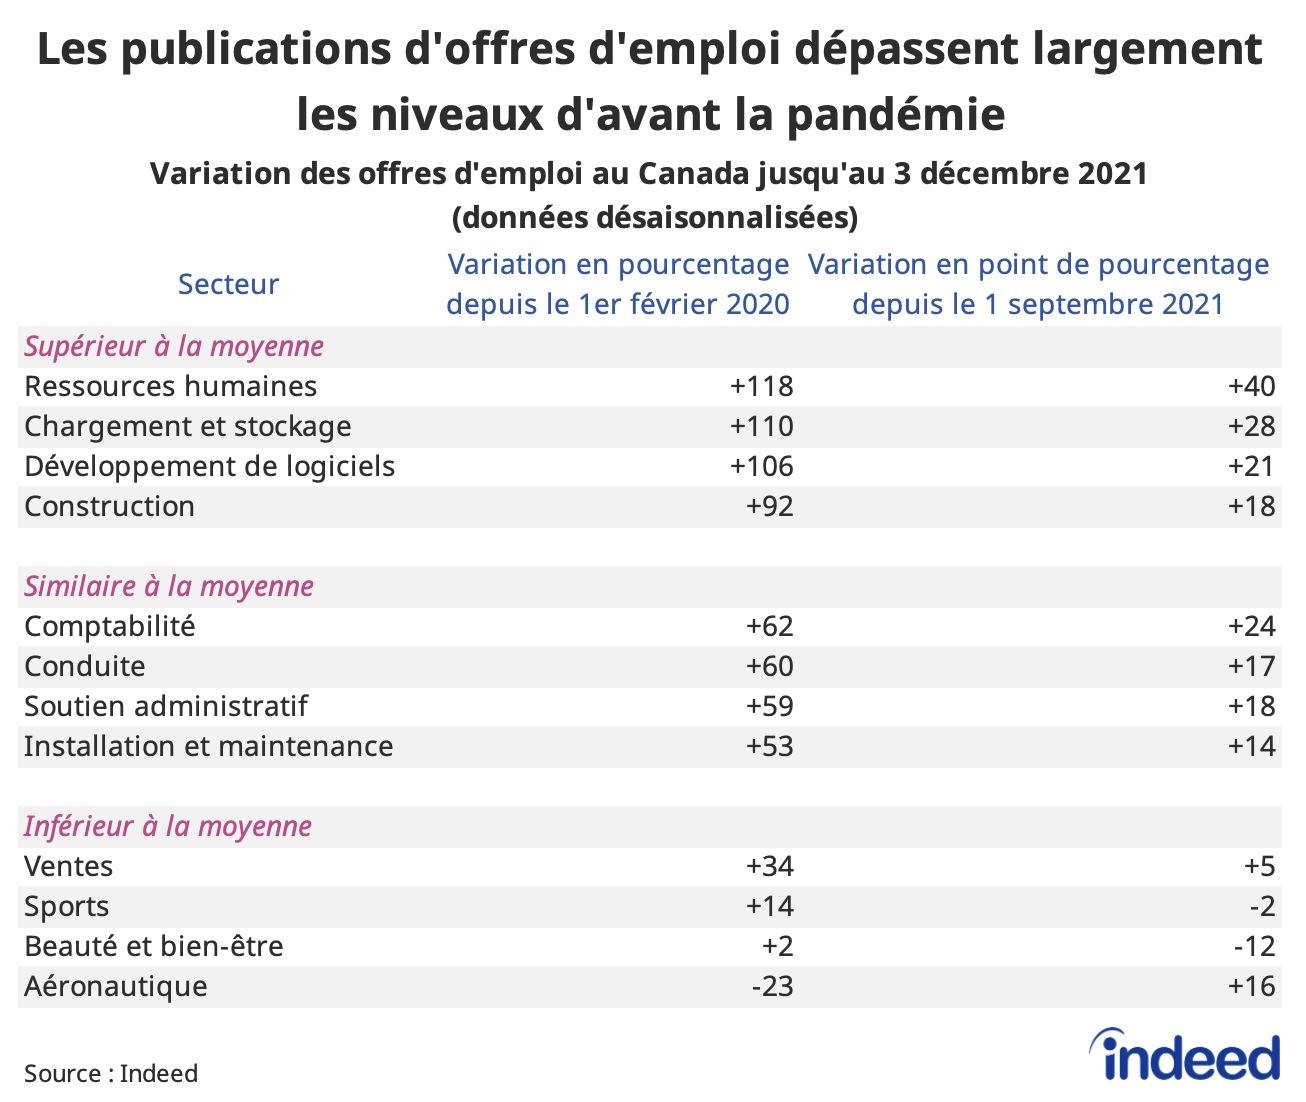 Tableau intitulé : « Les publications d'offres d'emploi dépassent largement les niveaux d'avant la pandémie dans presque tous les secteurs »